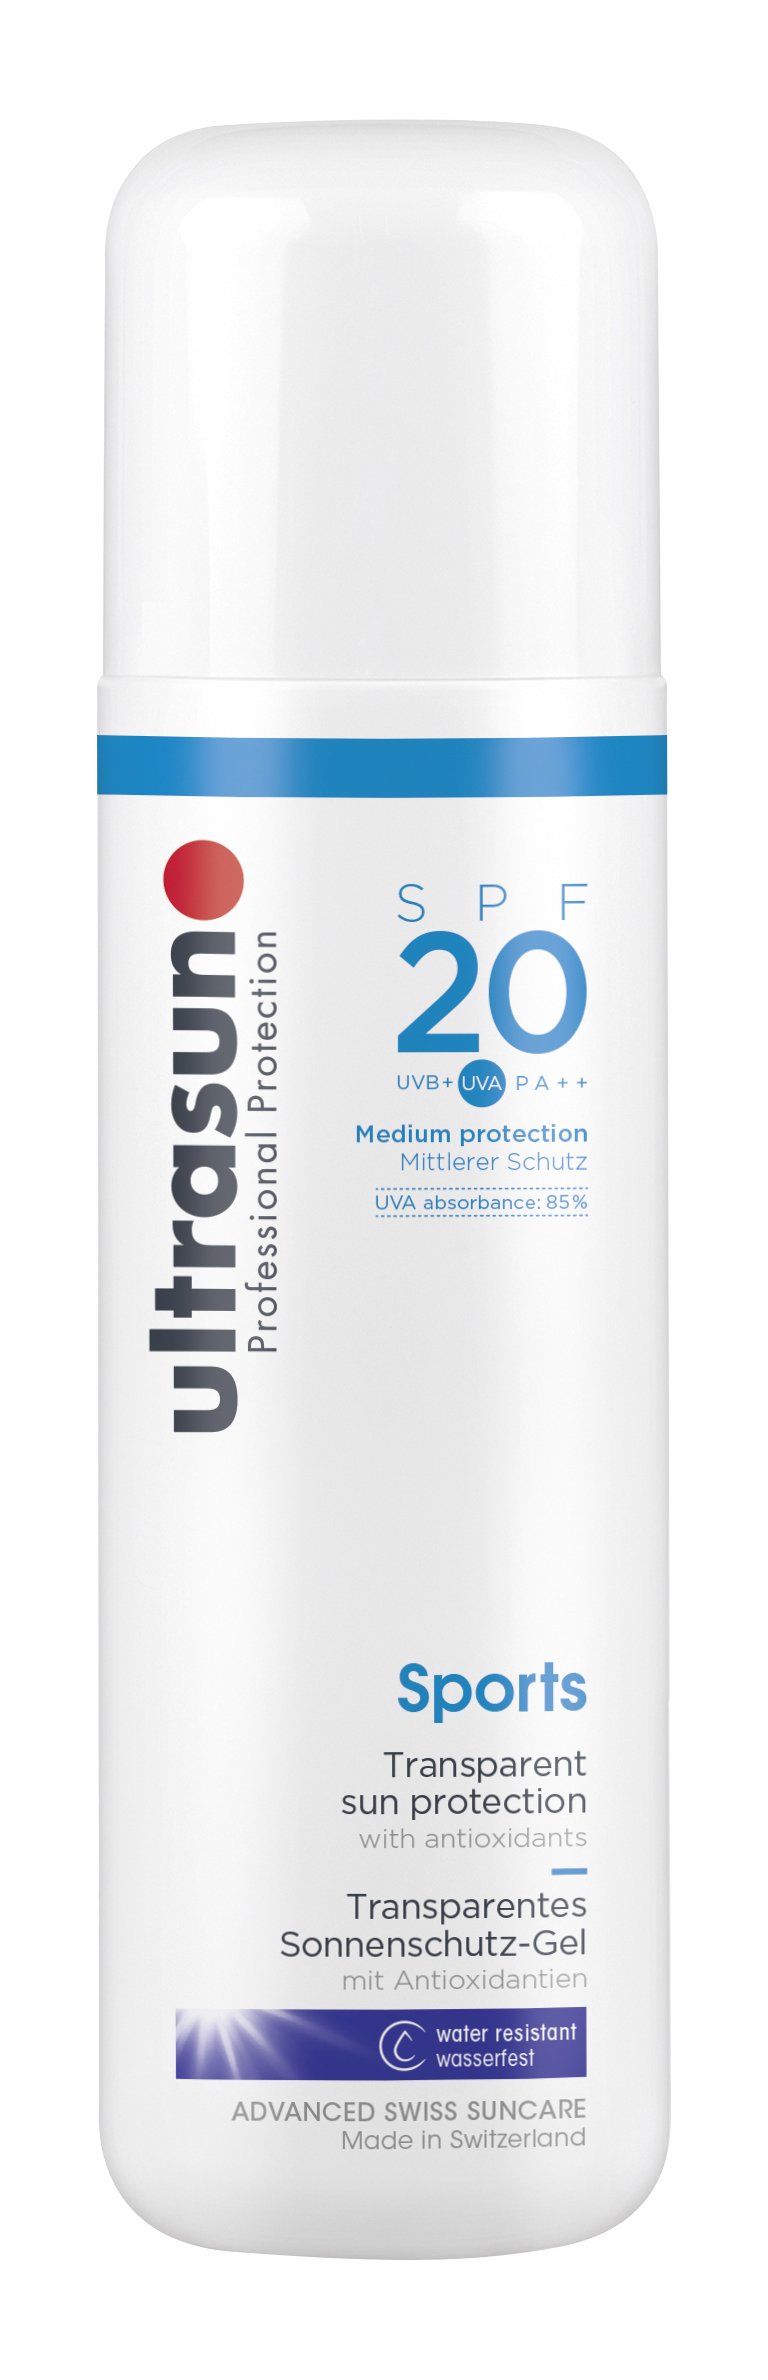 Ultrasun Sports Gel Spf20 Transparentes Sonnenschutz-Gel, 200 ml